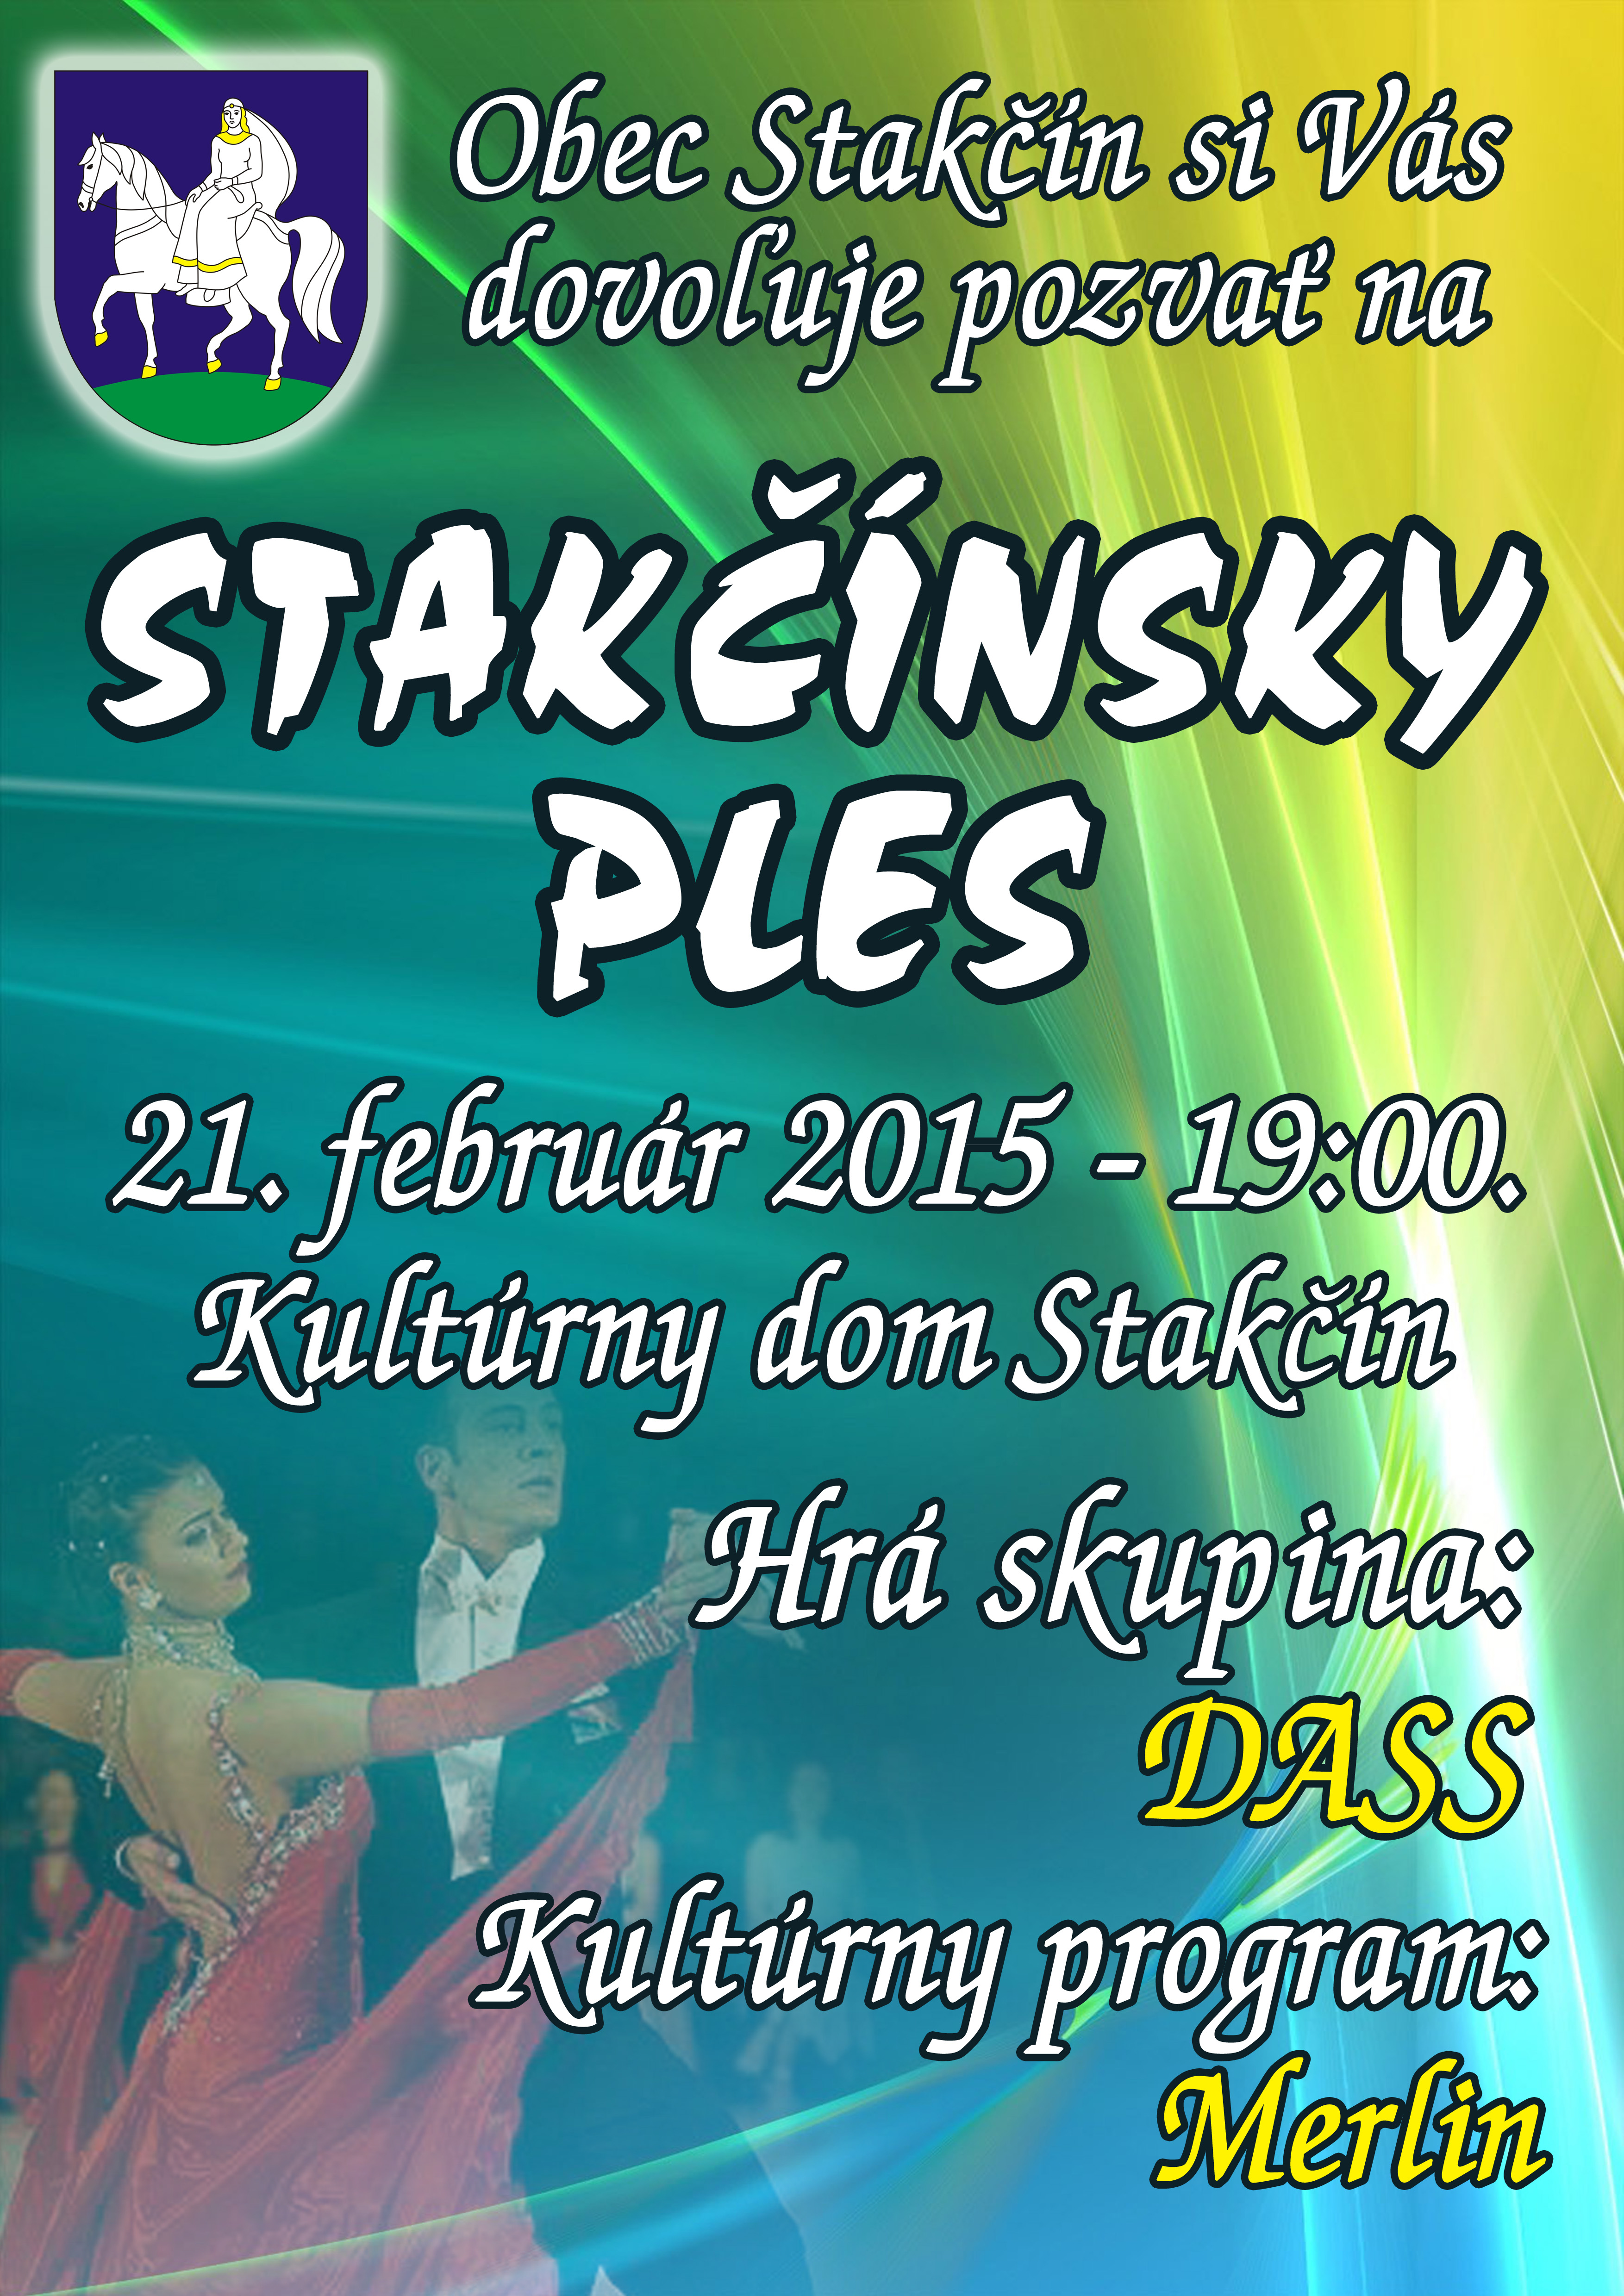 Staknsky ples Stakn